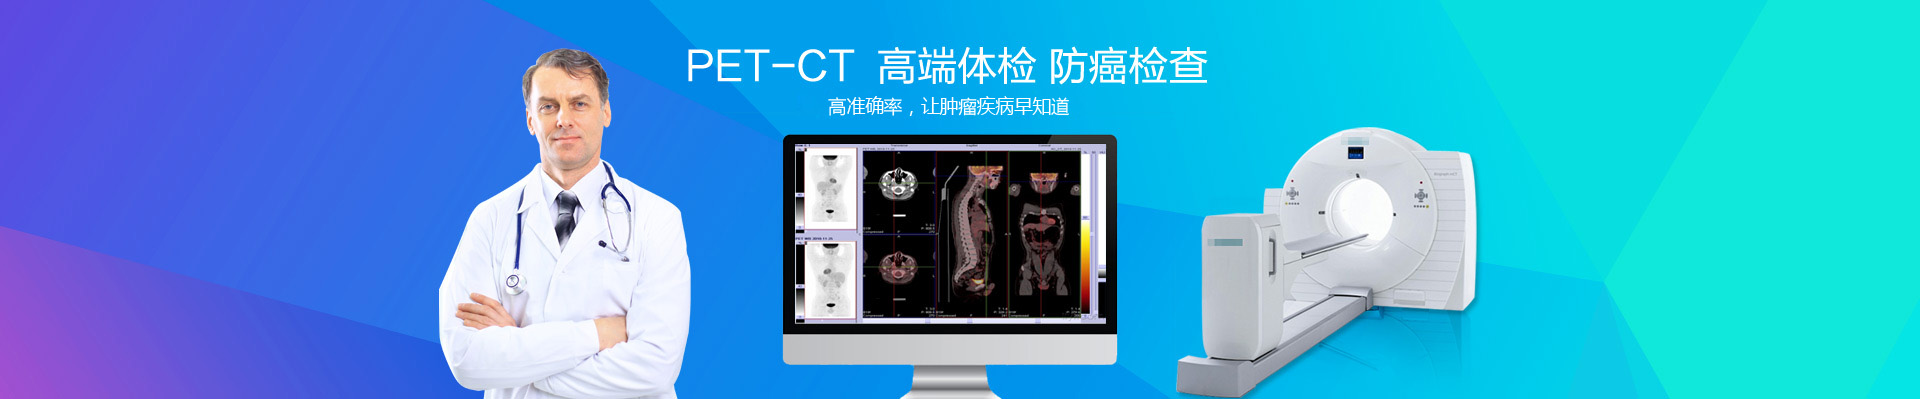 上海州信医学影像诊断中心PETCT检查